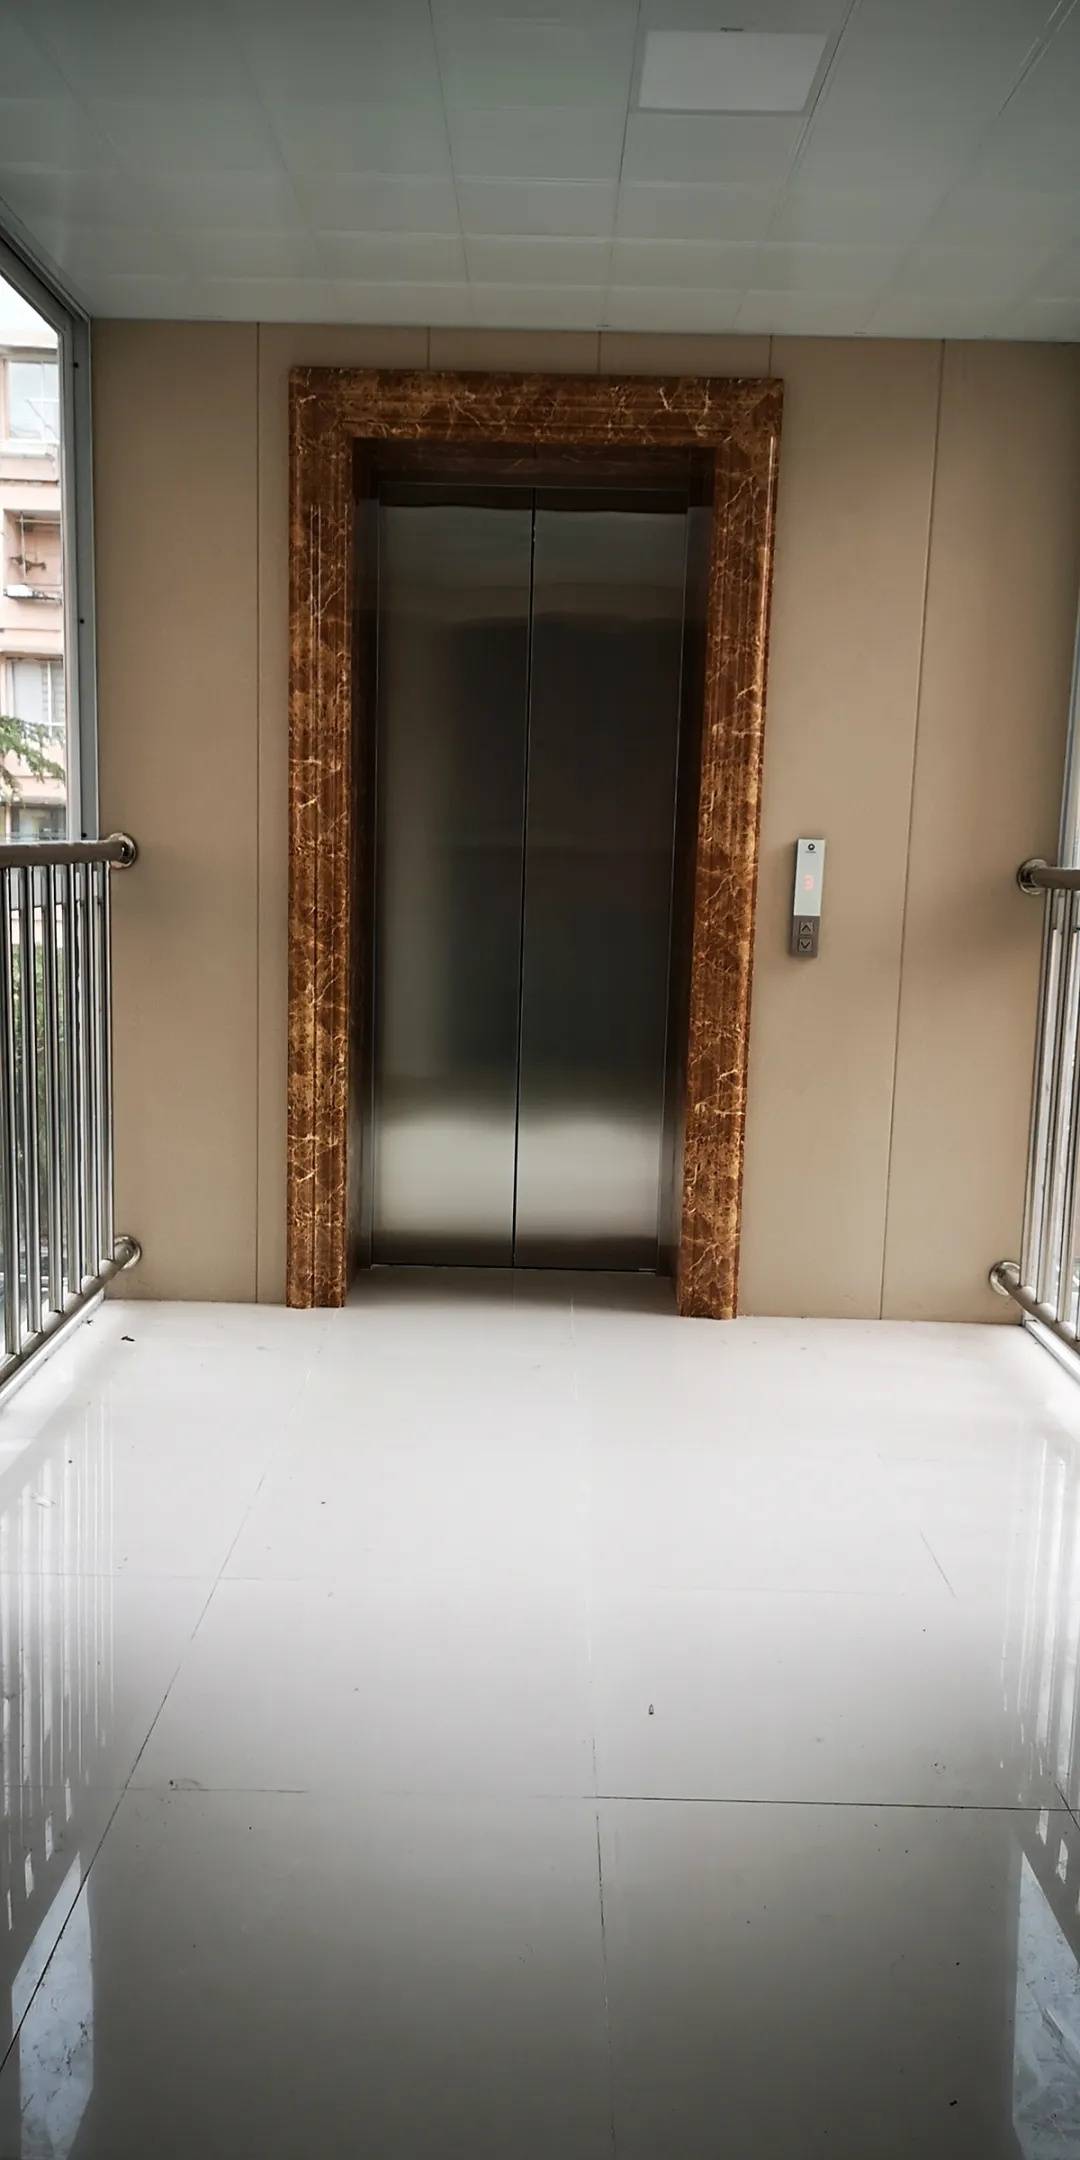 老楼房圆电梯梦宝山这个居民区首部加装电梯投入使用多部正在施工筹备